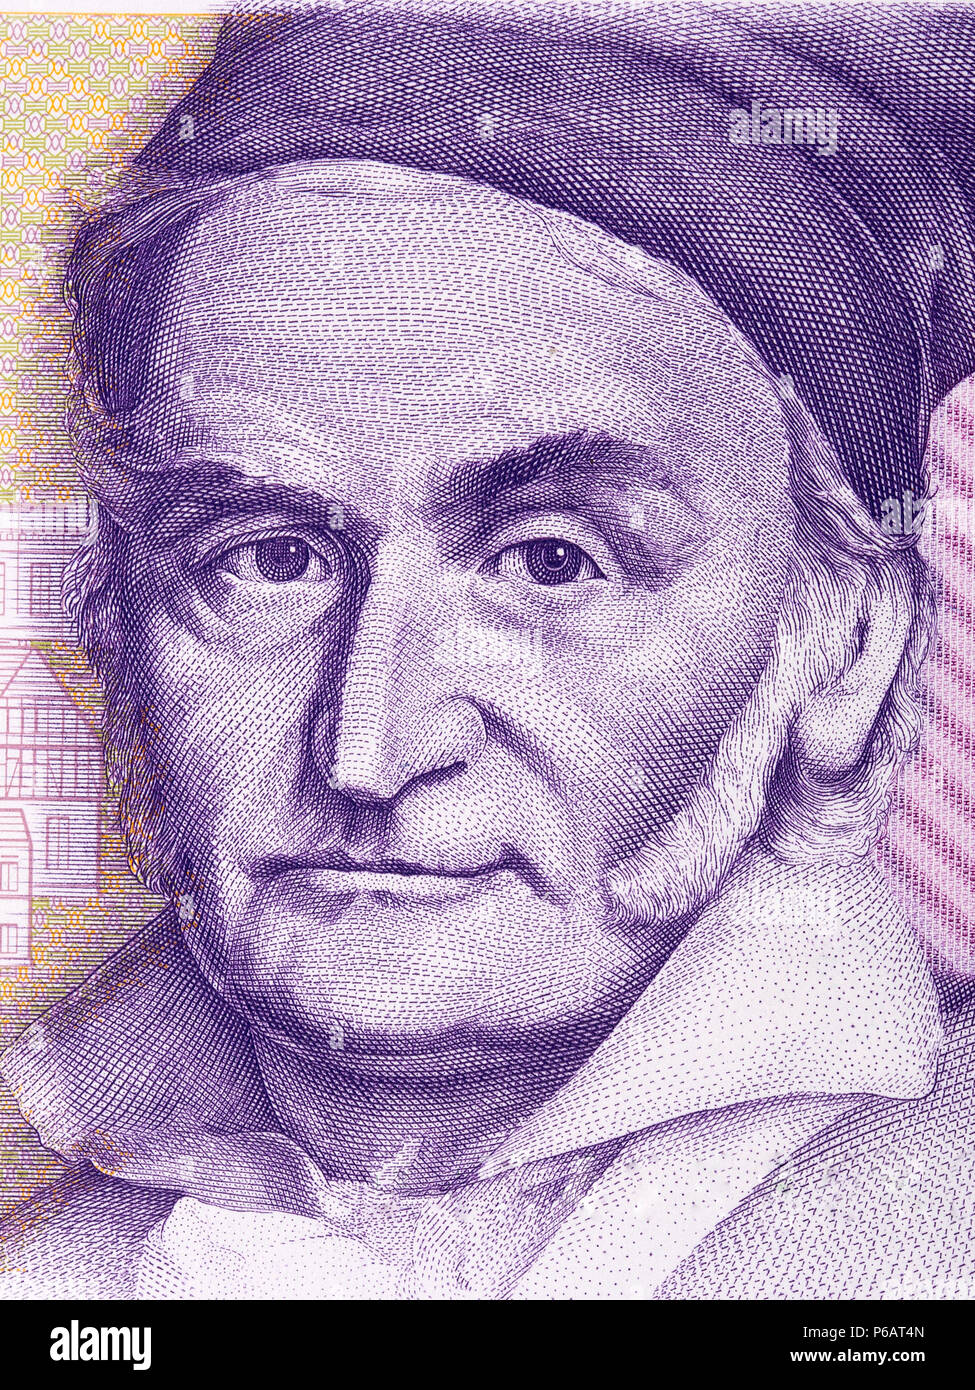 Carl Friedrich Gauss portrait from Deutsche Mark Stock Photo